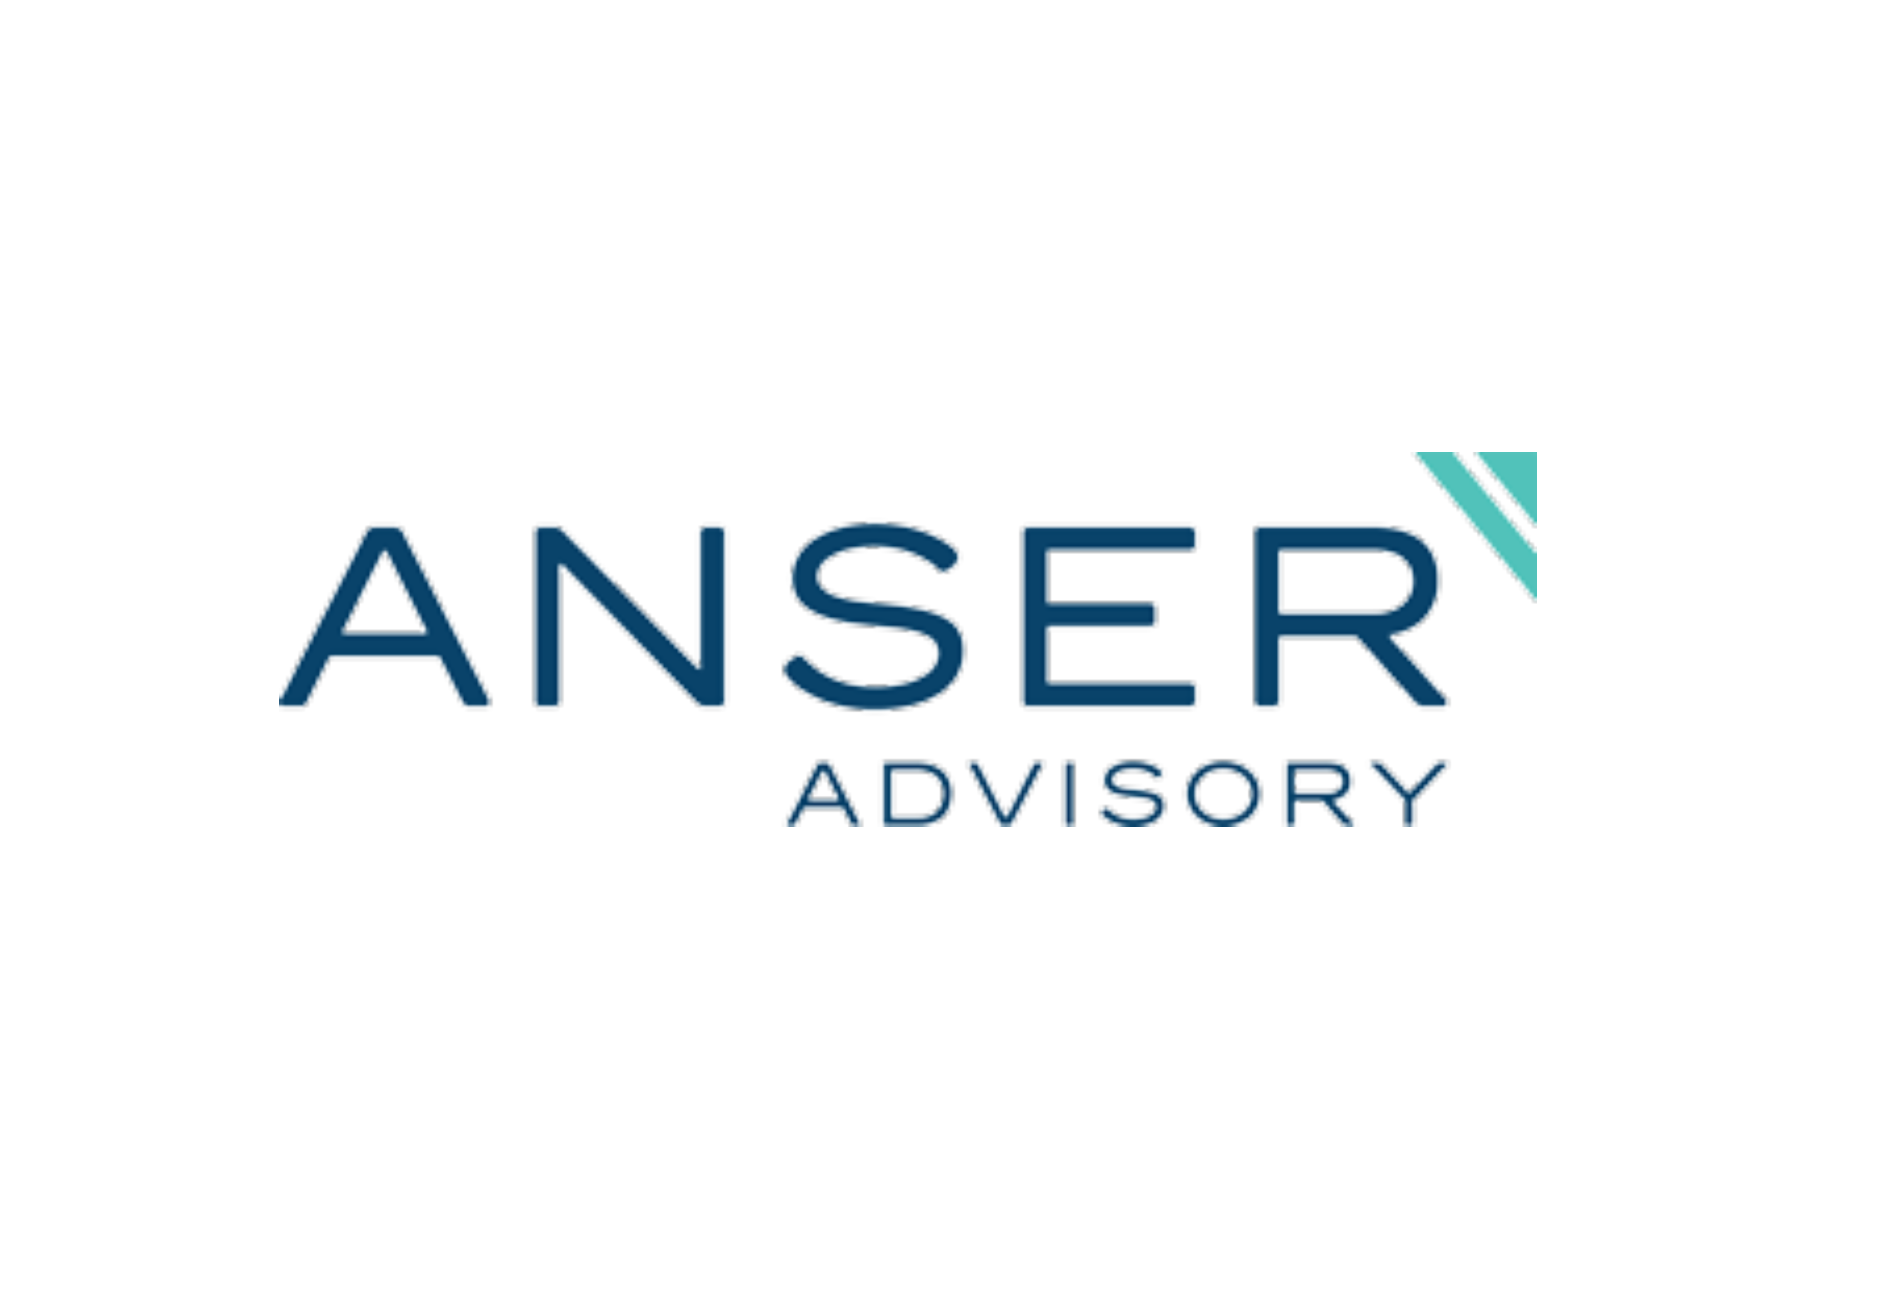 New Capital Program Advisory Firm Formed as Anser Advisory